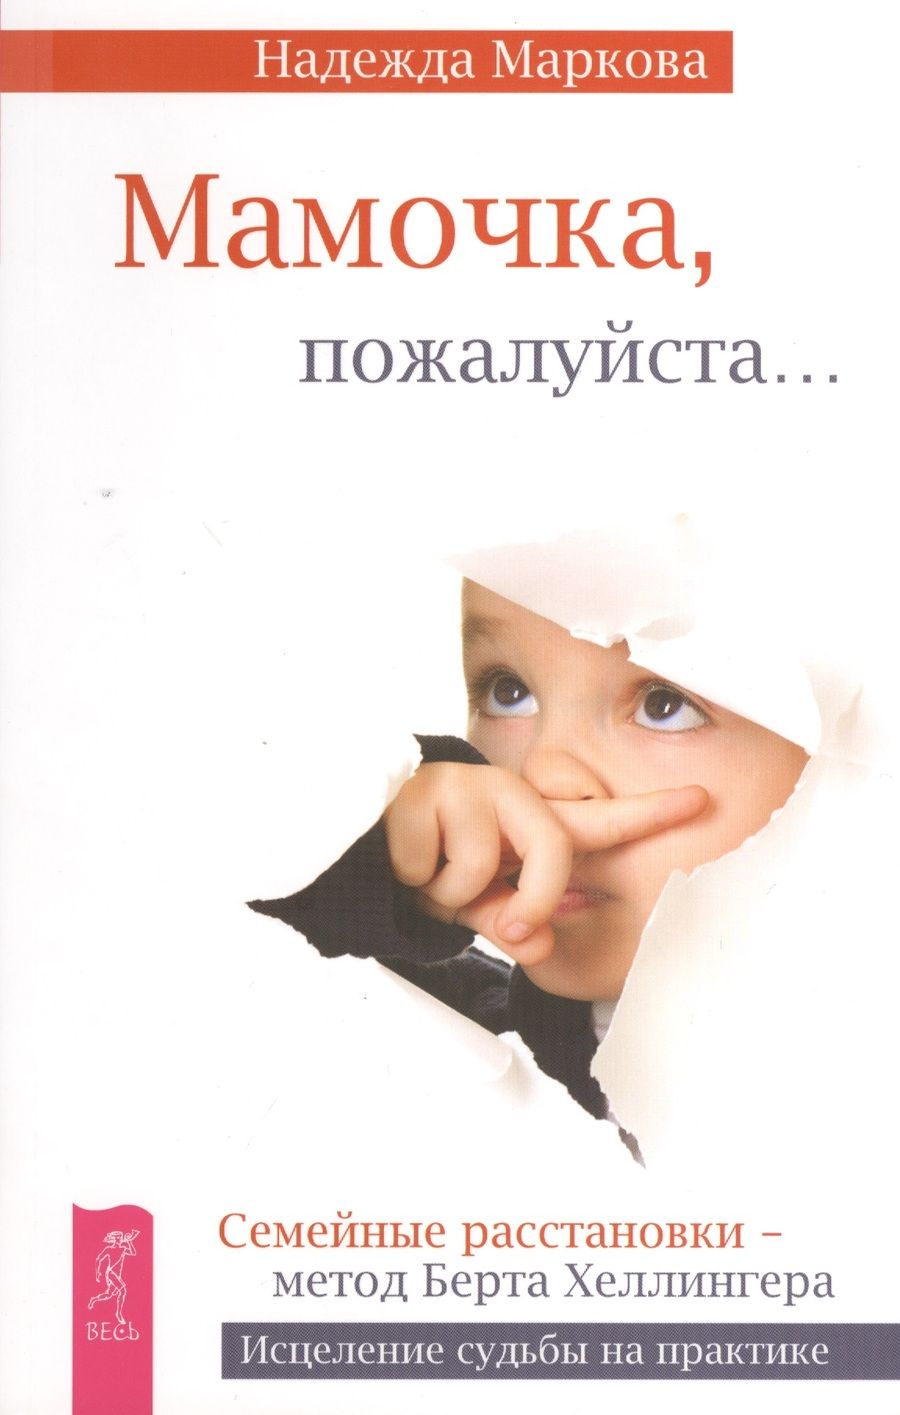 Обложка книги "Надежда Маркова: Мамочка, пожалуйста... Семейные расстановки - метод Берта Хеллингера"